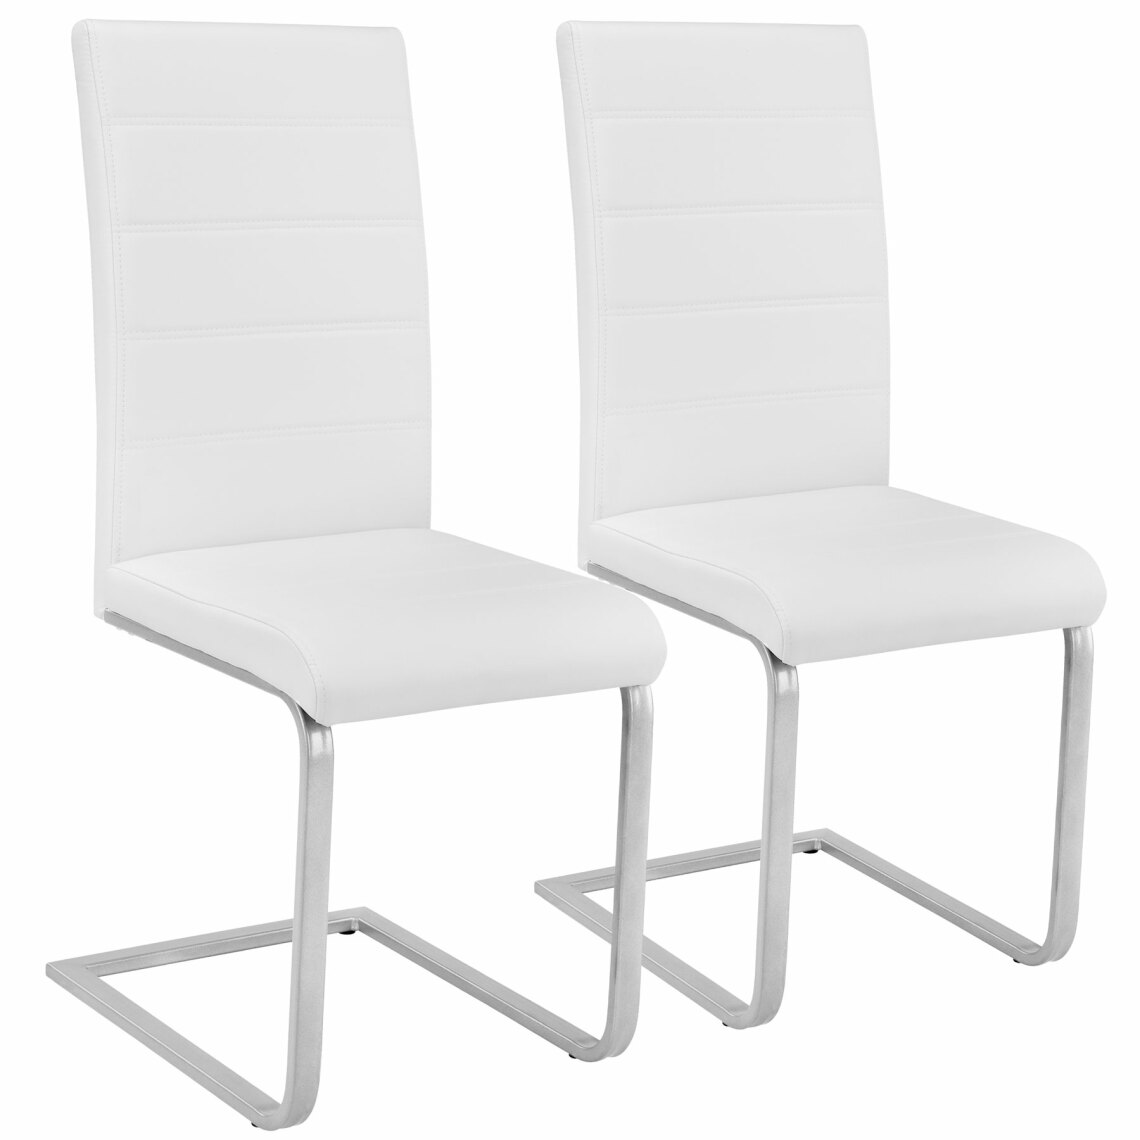 Tectake - 2 Chaises de Salle à Manger BETTINA Rembourrées Pieds en métal Argentés Design Moderne - blanc - Chaises